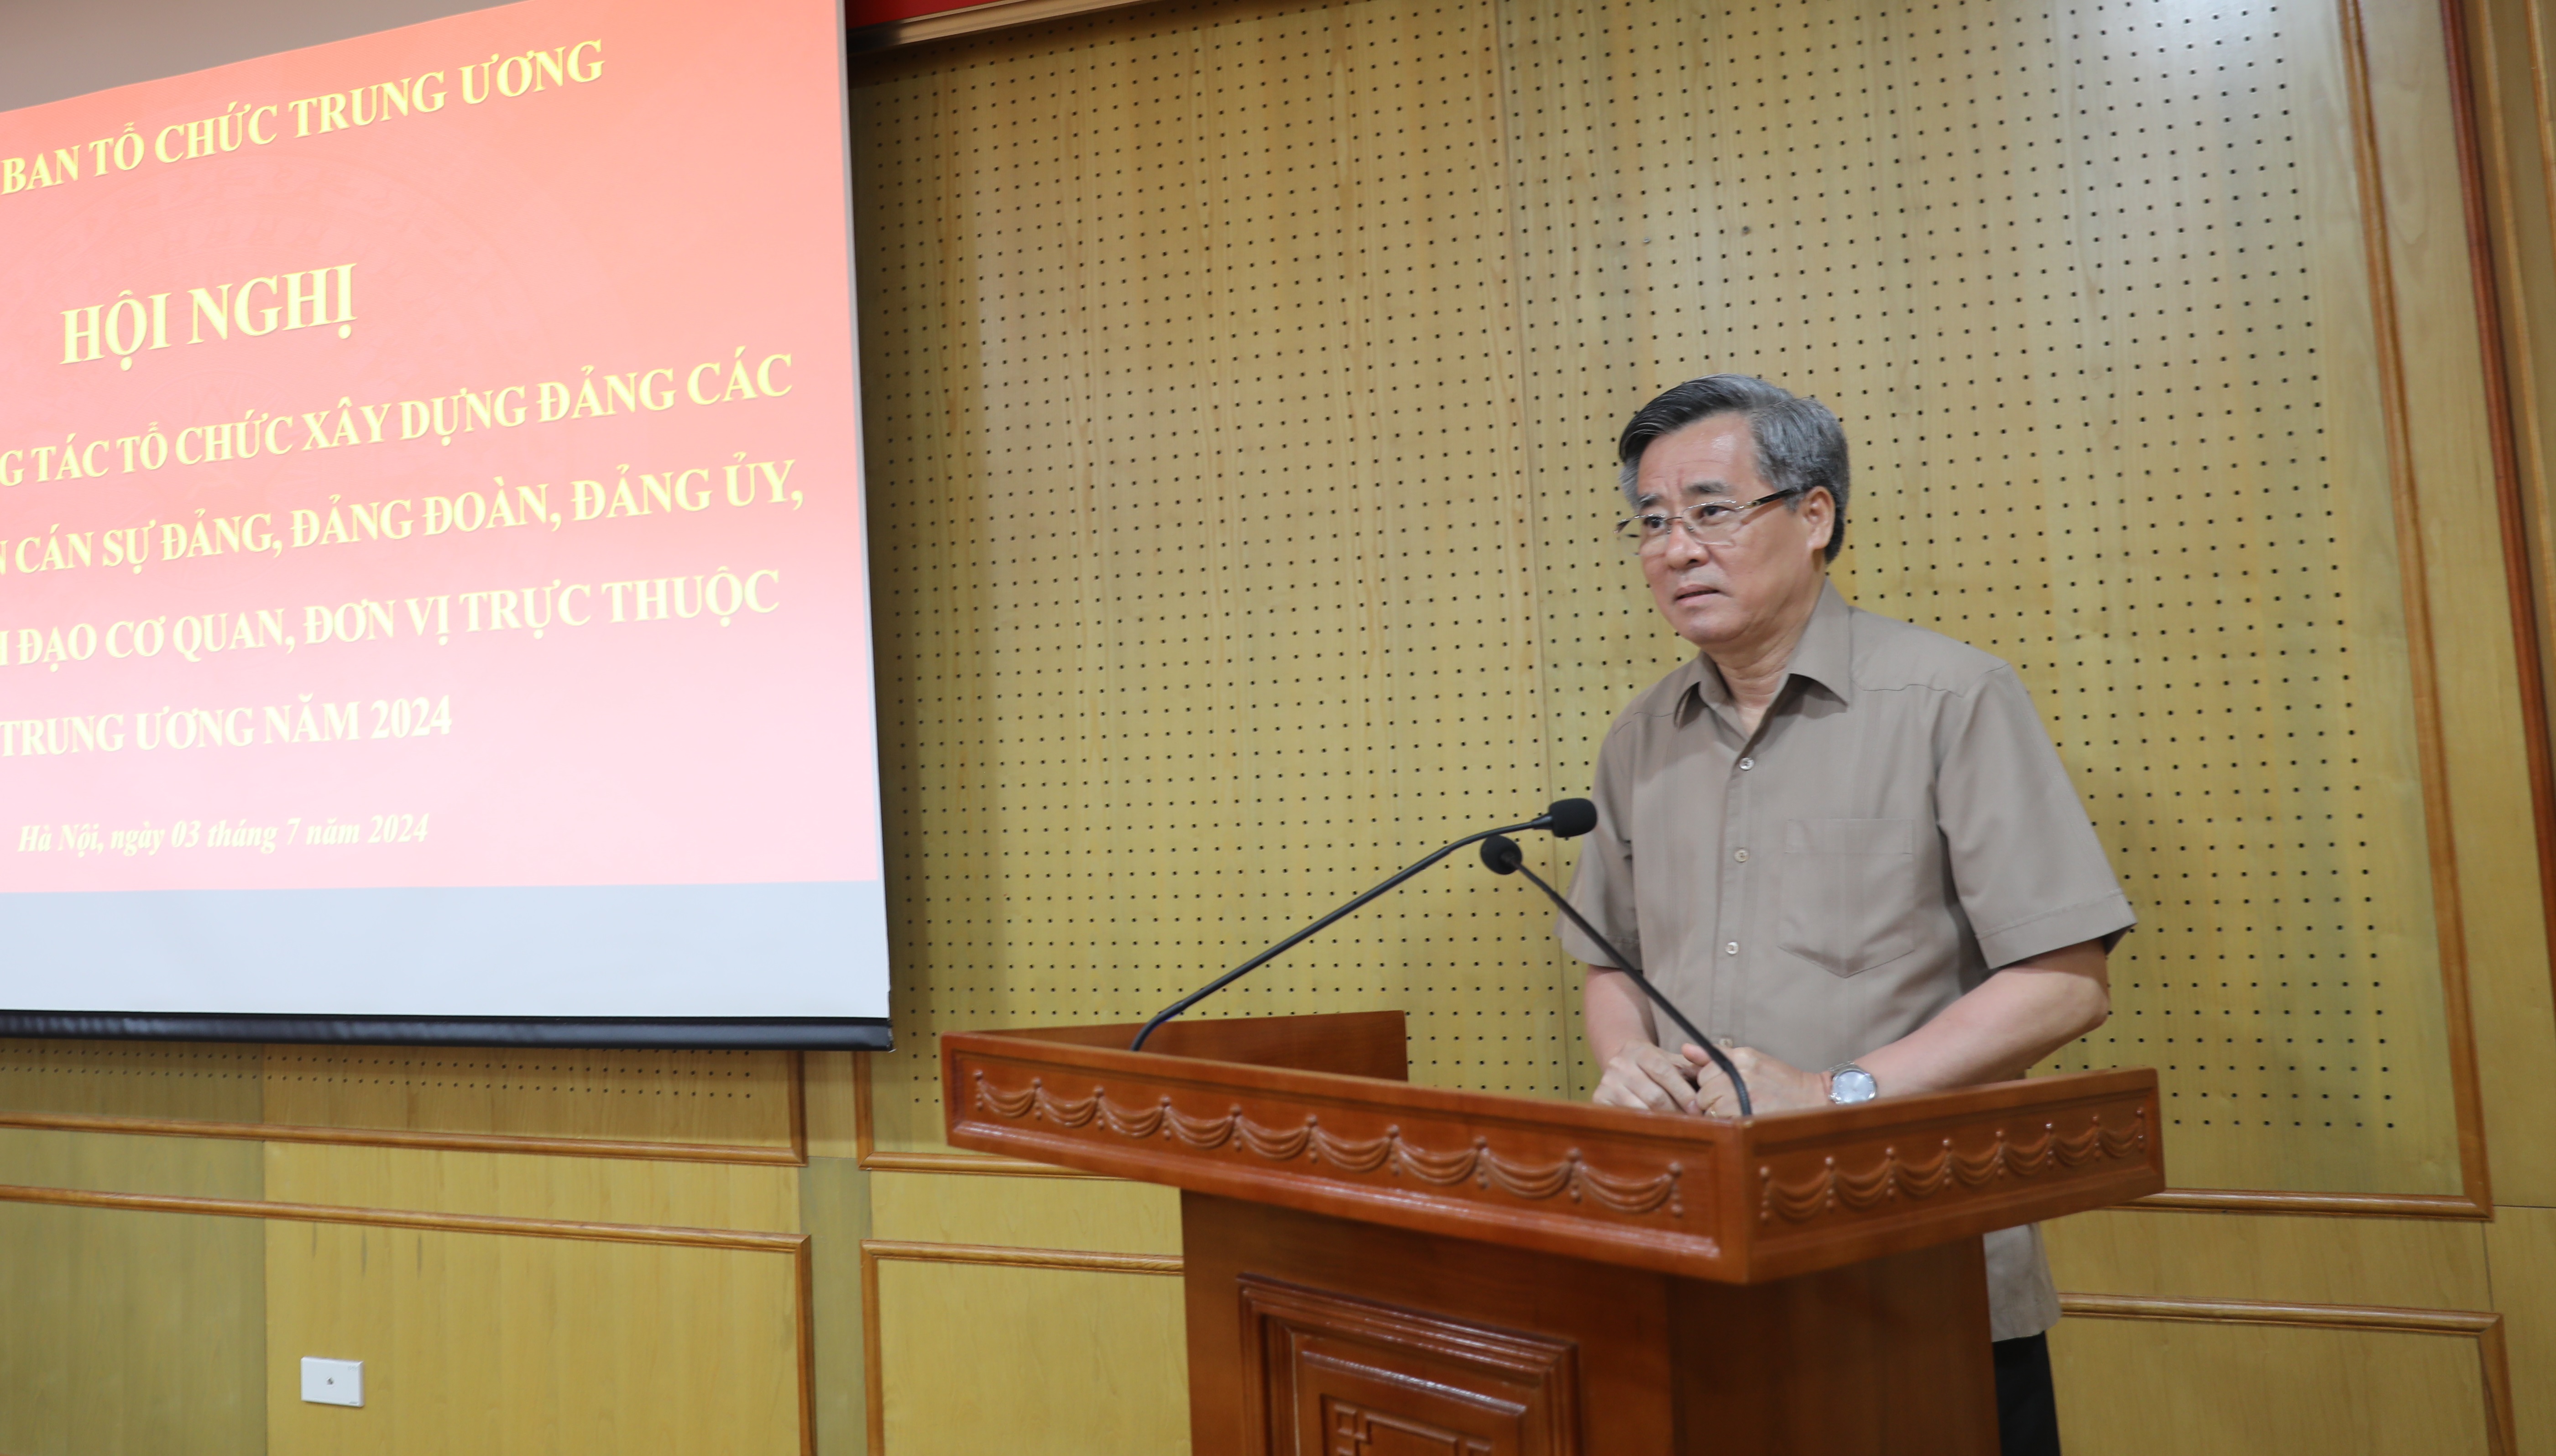 Phó Trưởng Ban Tổ chức Trung ương Nguyễn Quang Dương phát biểu ý kiến kết luận Hội nghị tại Hội trường G, sáng 3-7-2024.